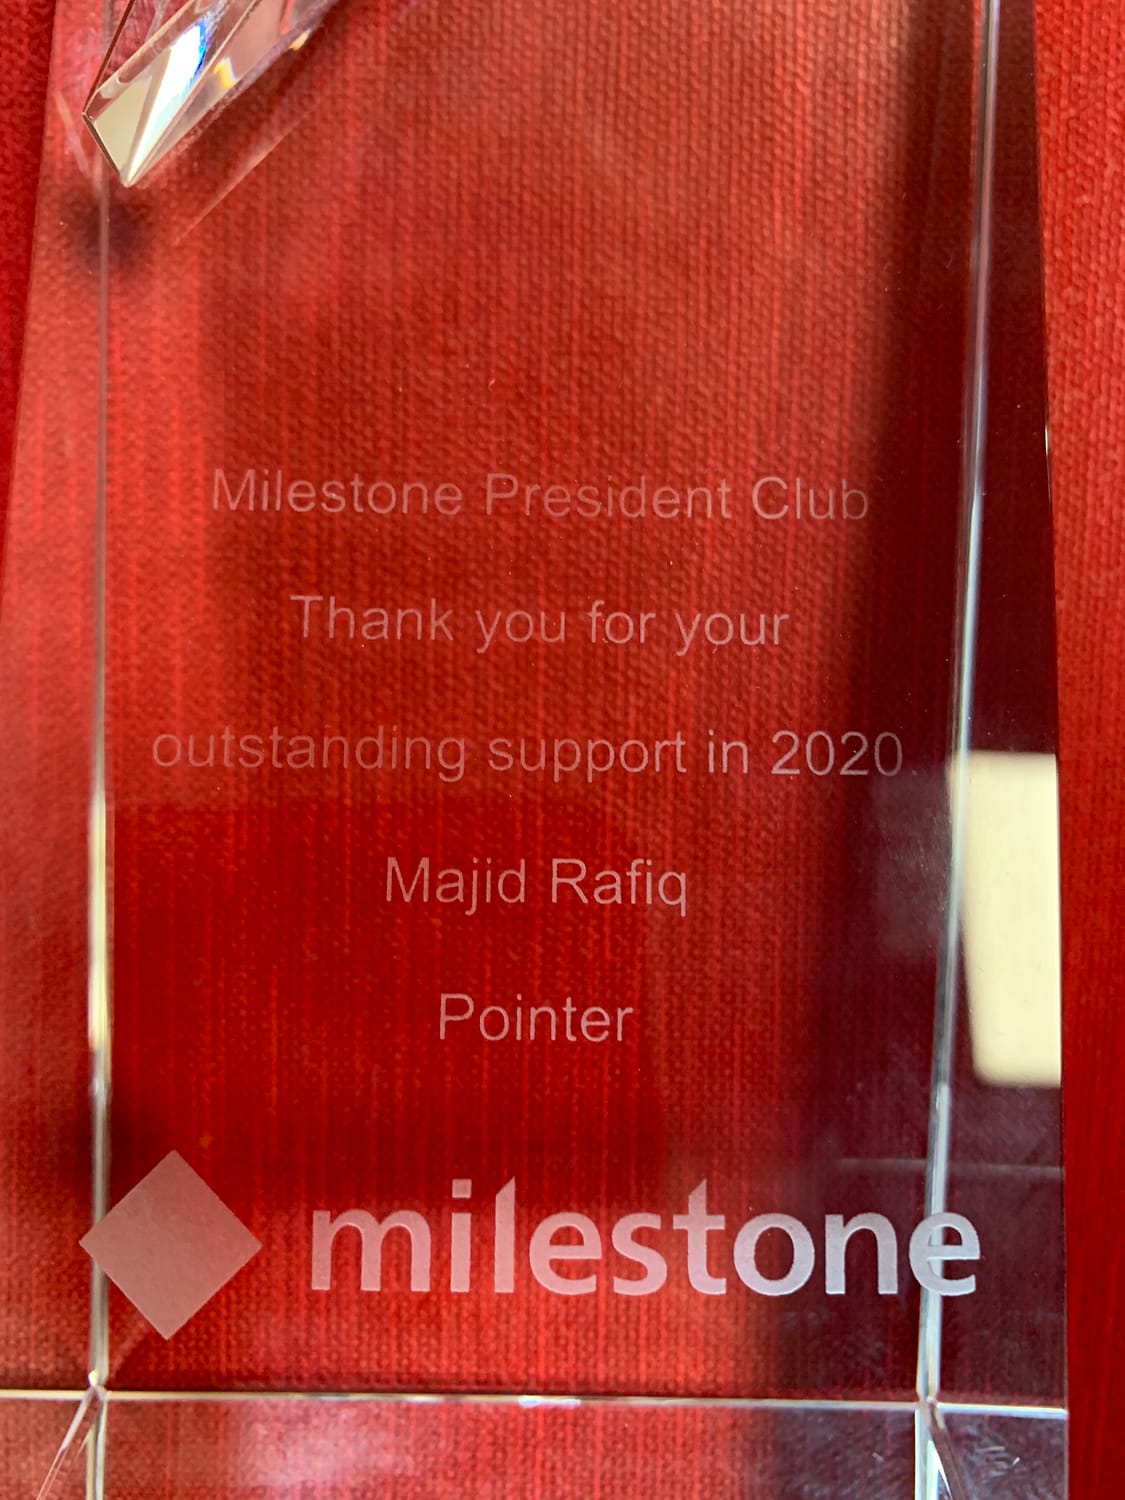 award from Milestone